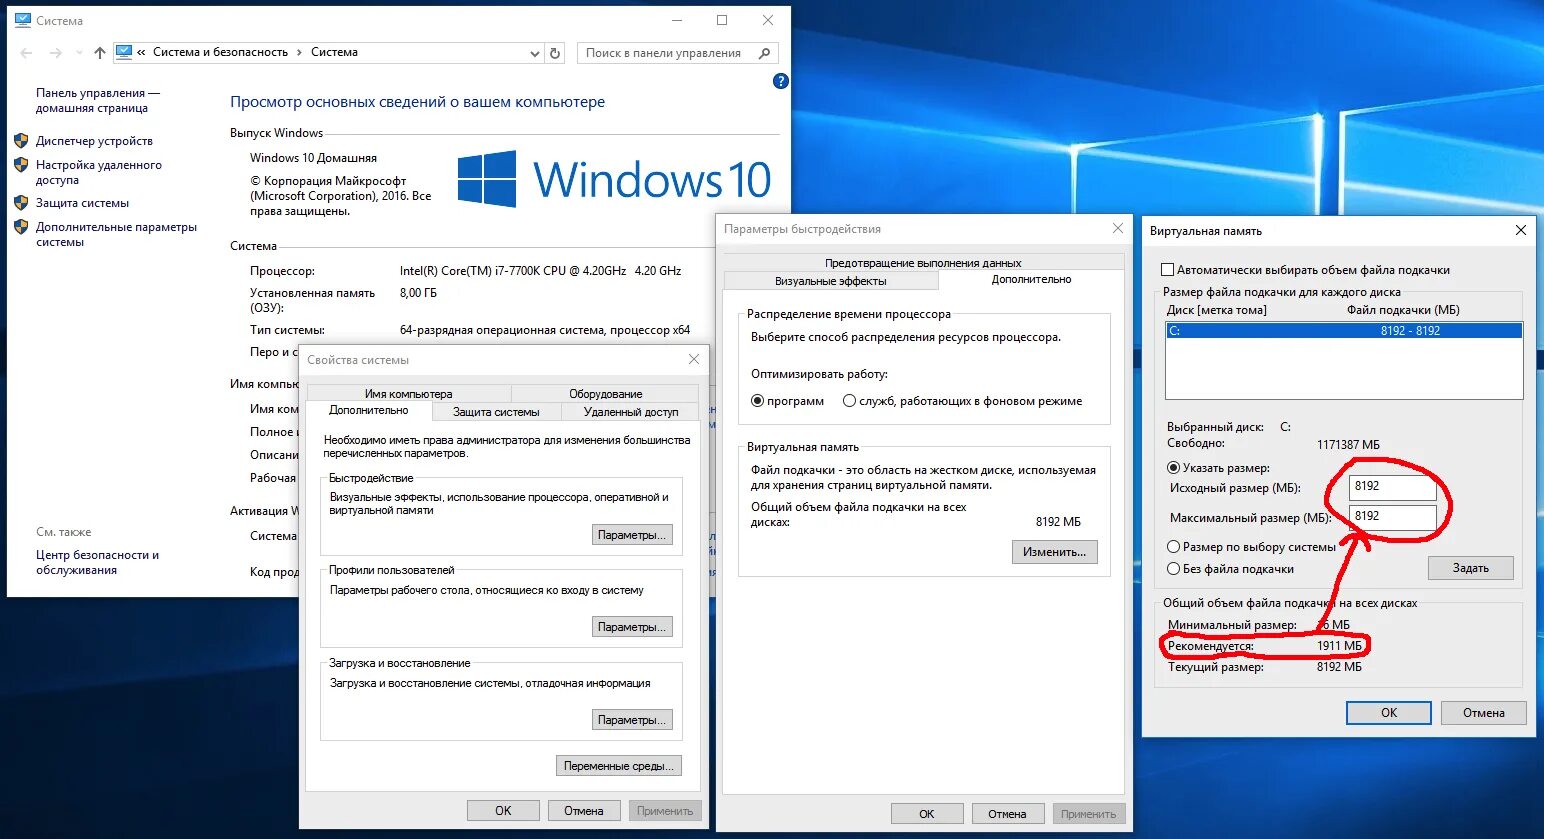 Как увеличить количество памяти. Виртуальная память виндовс 10. Файл подкачки win 10. Подкачка оперативной памяти Windows 10. Как поставить файл подкачки в виндовс 10.